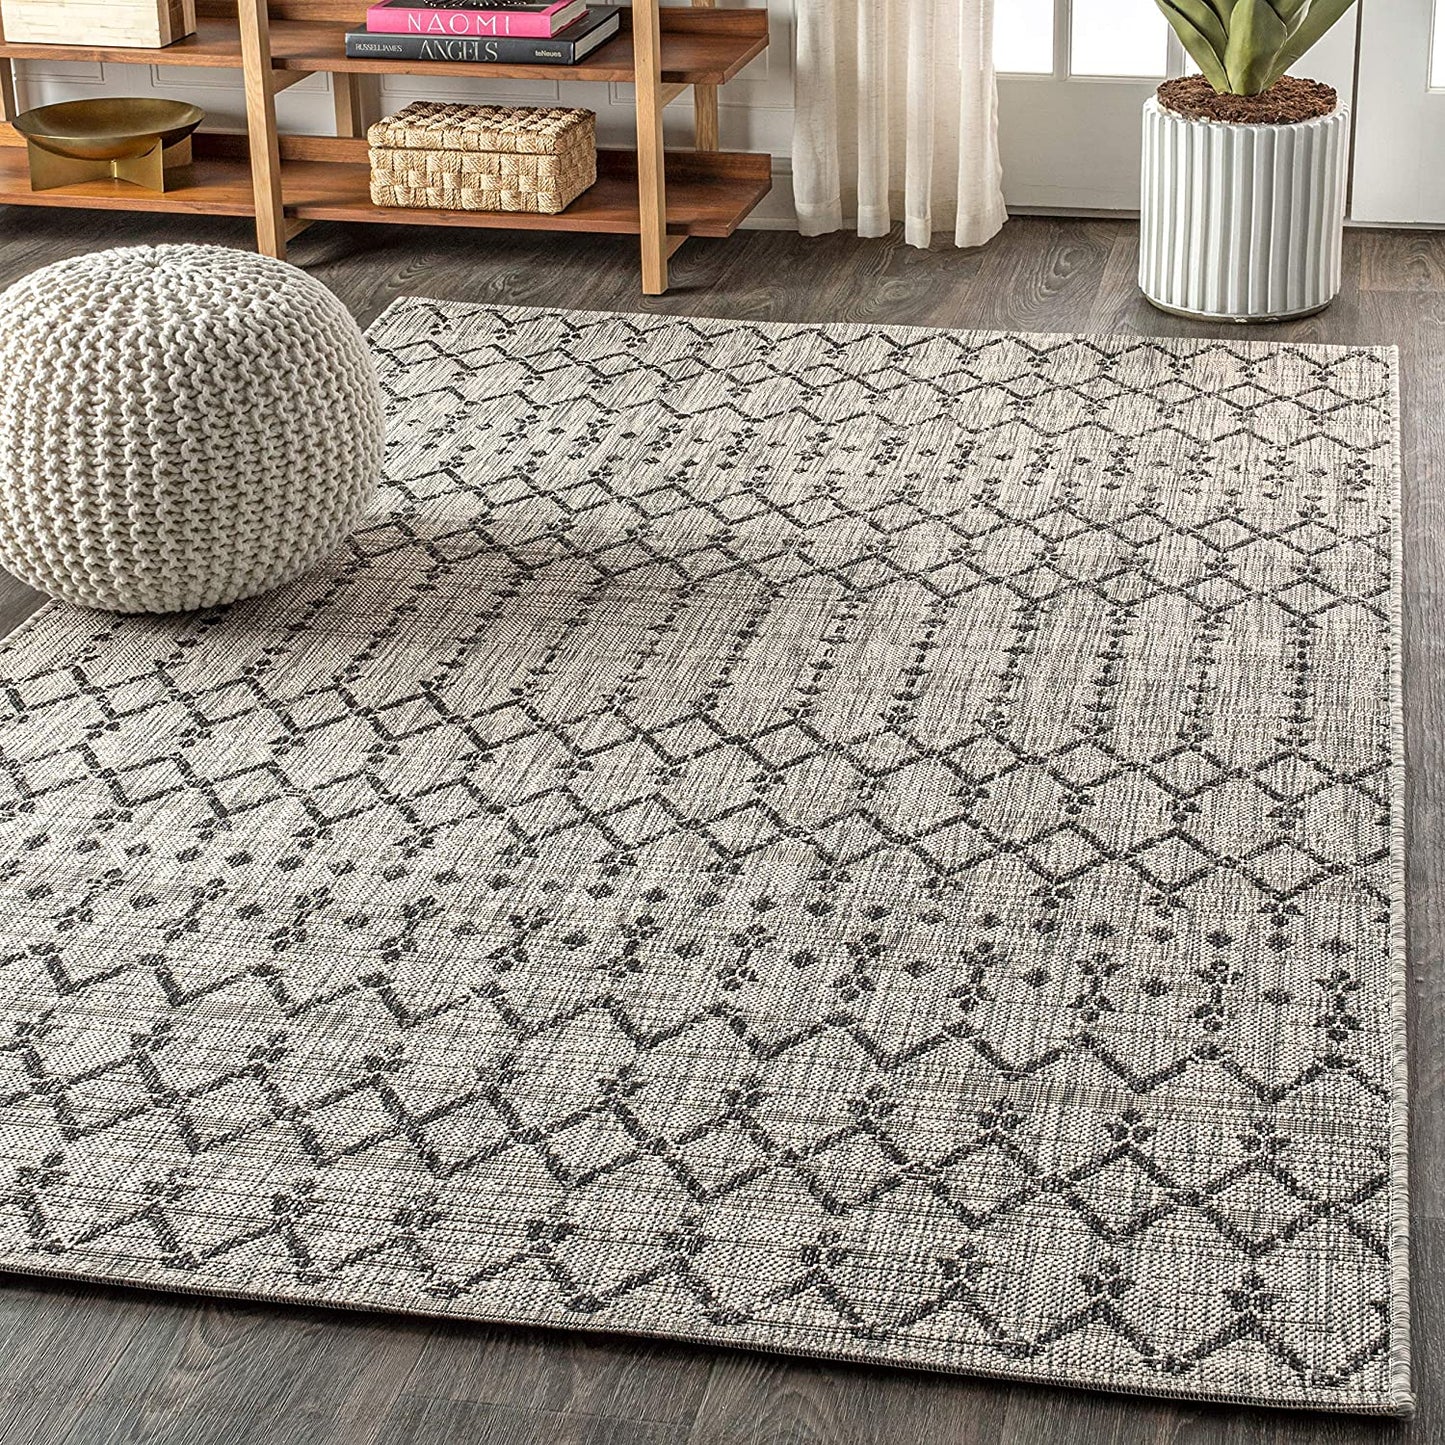 Moroccan Geometric Textured Weave Indoor/Outdoor Gray/Black